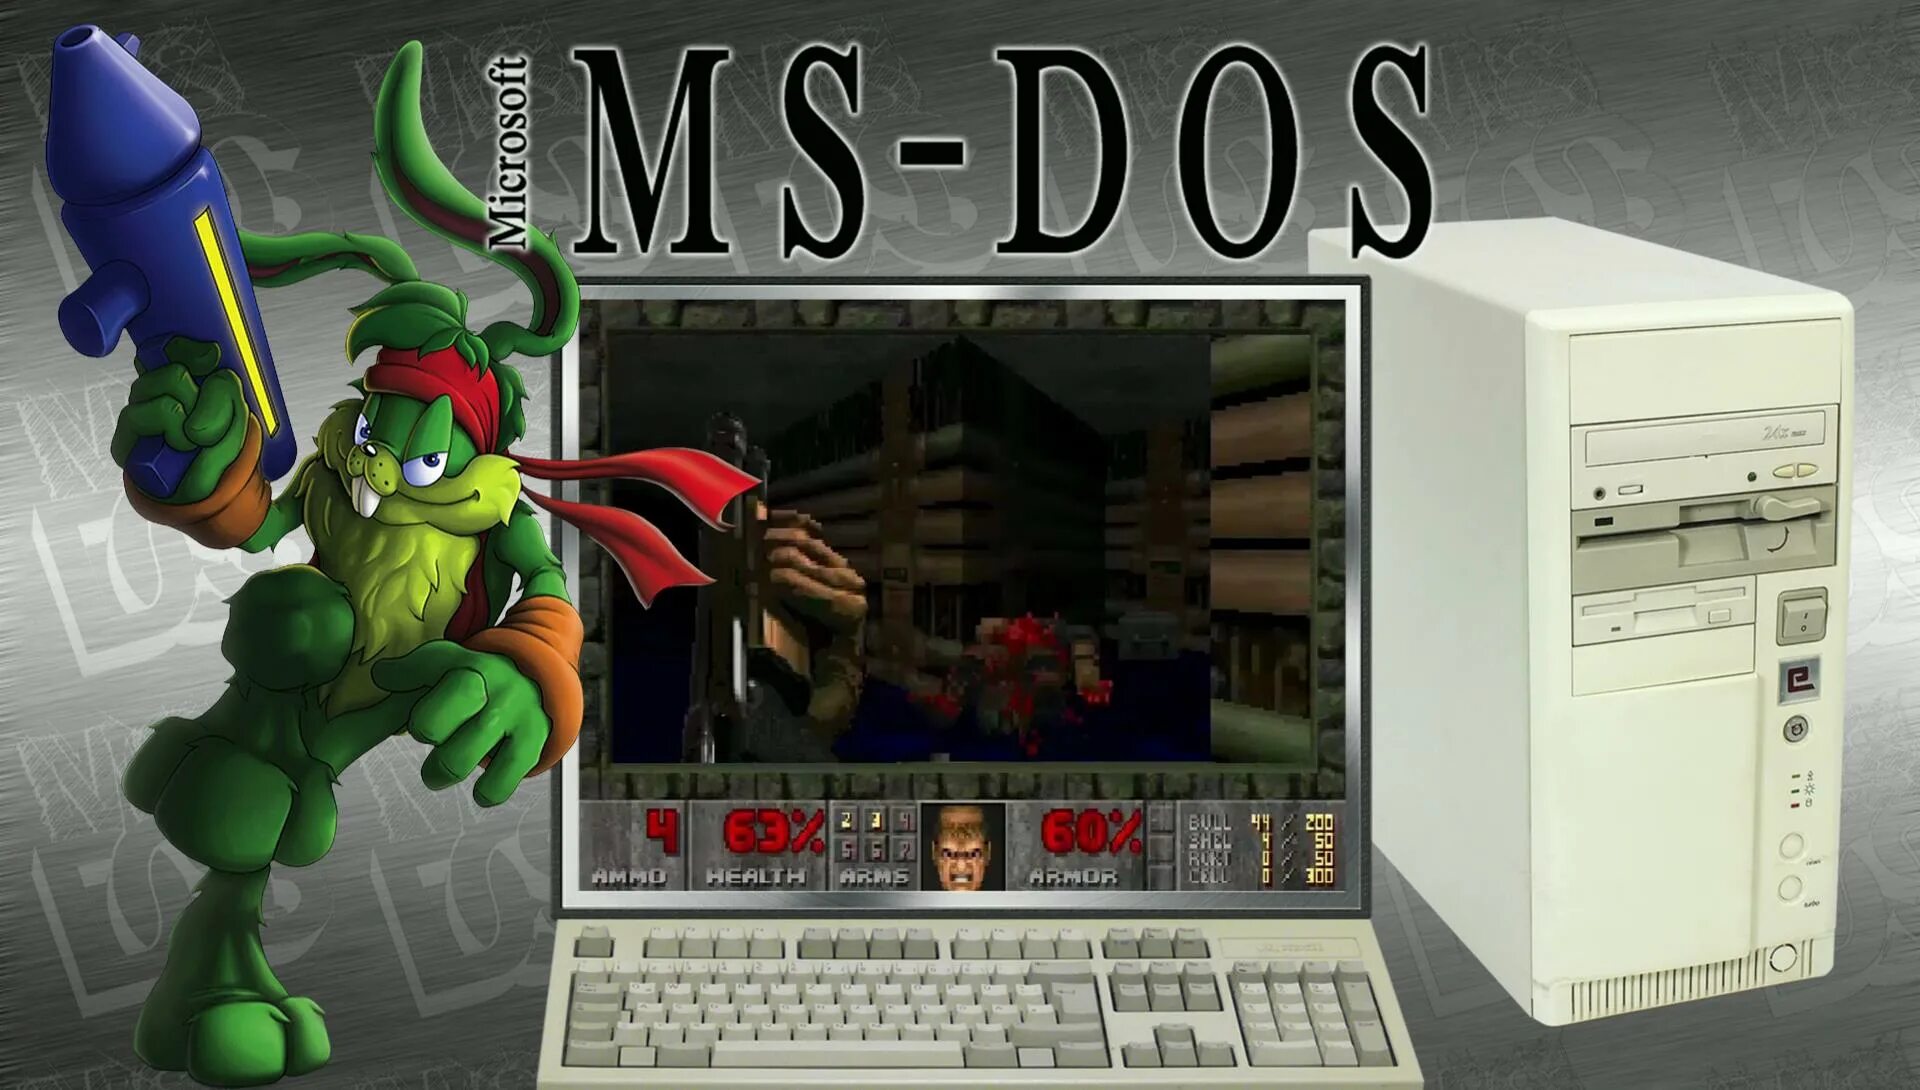 Мод дос. MS dos игры. MS dos рабочий стол. Обои MS dos. Рабочий стол в стиле MS-dos.